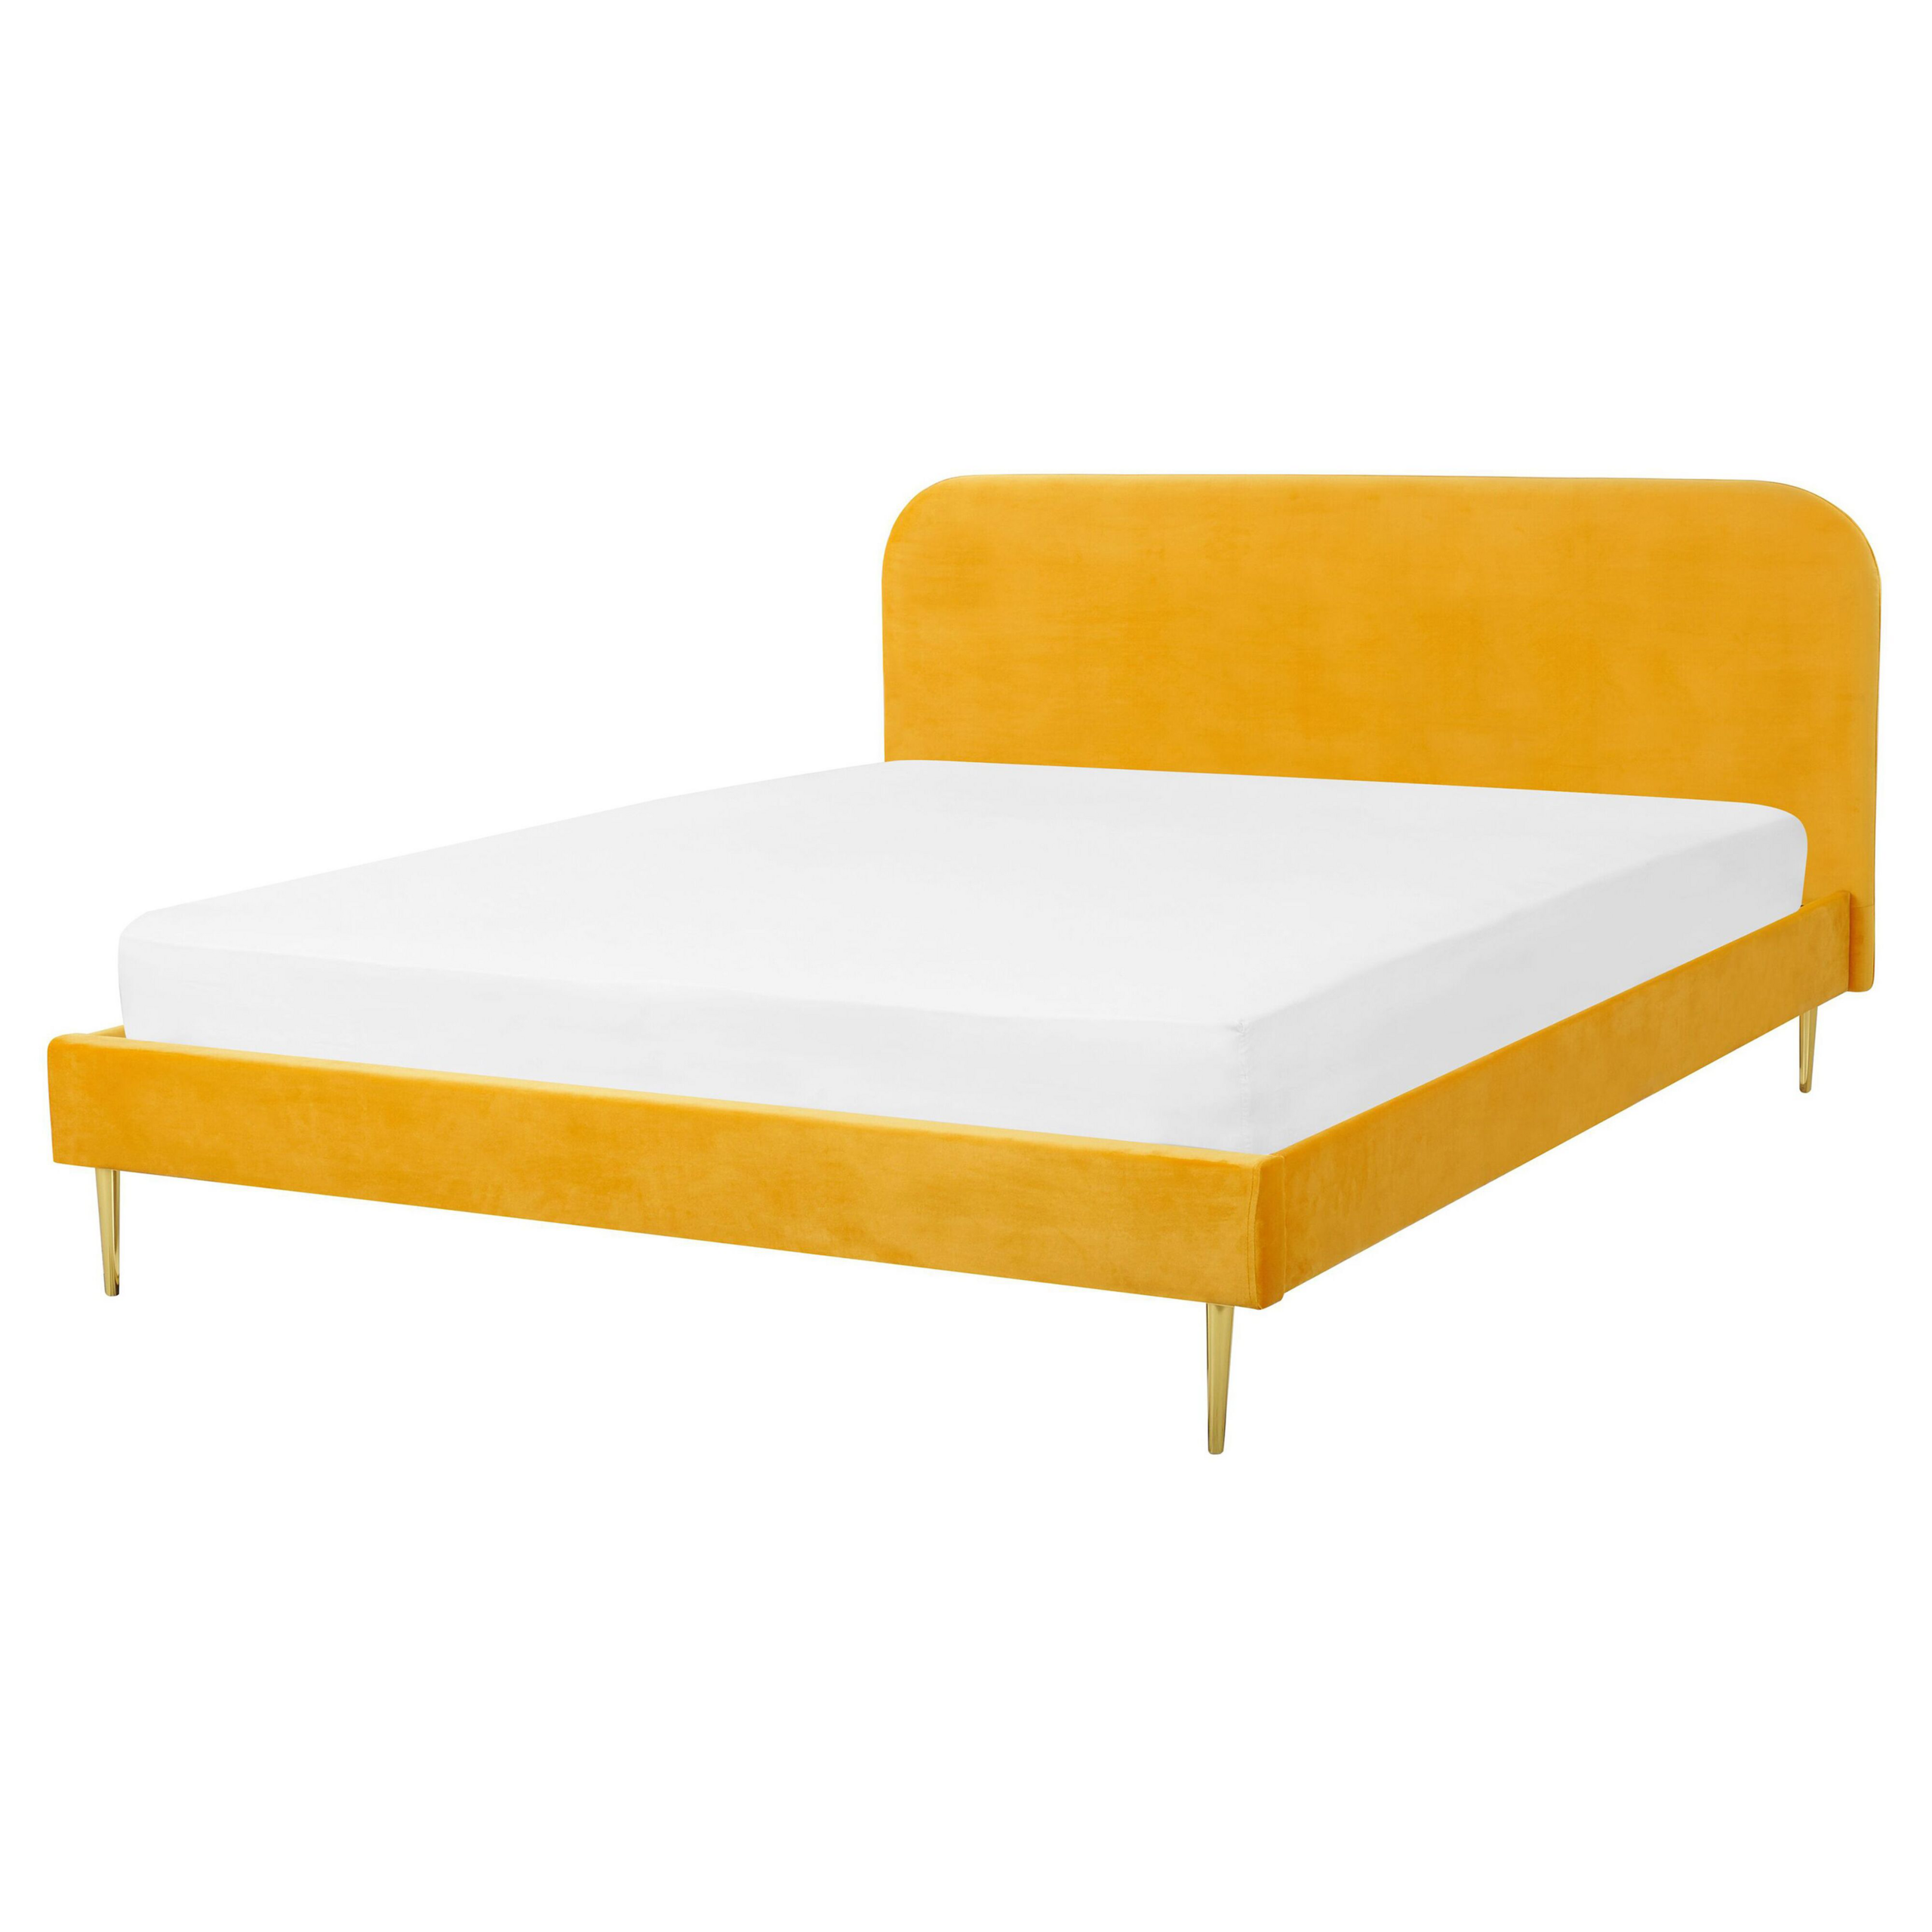 Beliani Bed Yellow Velvet Upholstery EU King Size Golden Legs Headboard Slatted Frame 5.3 ft Minimalist Design